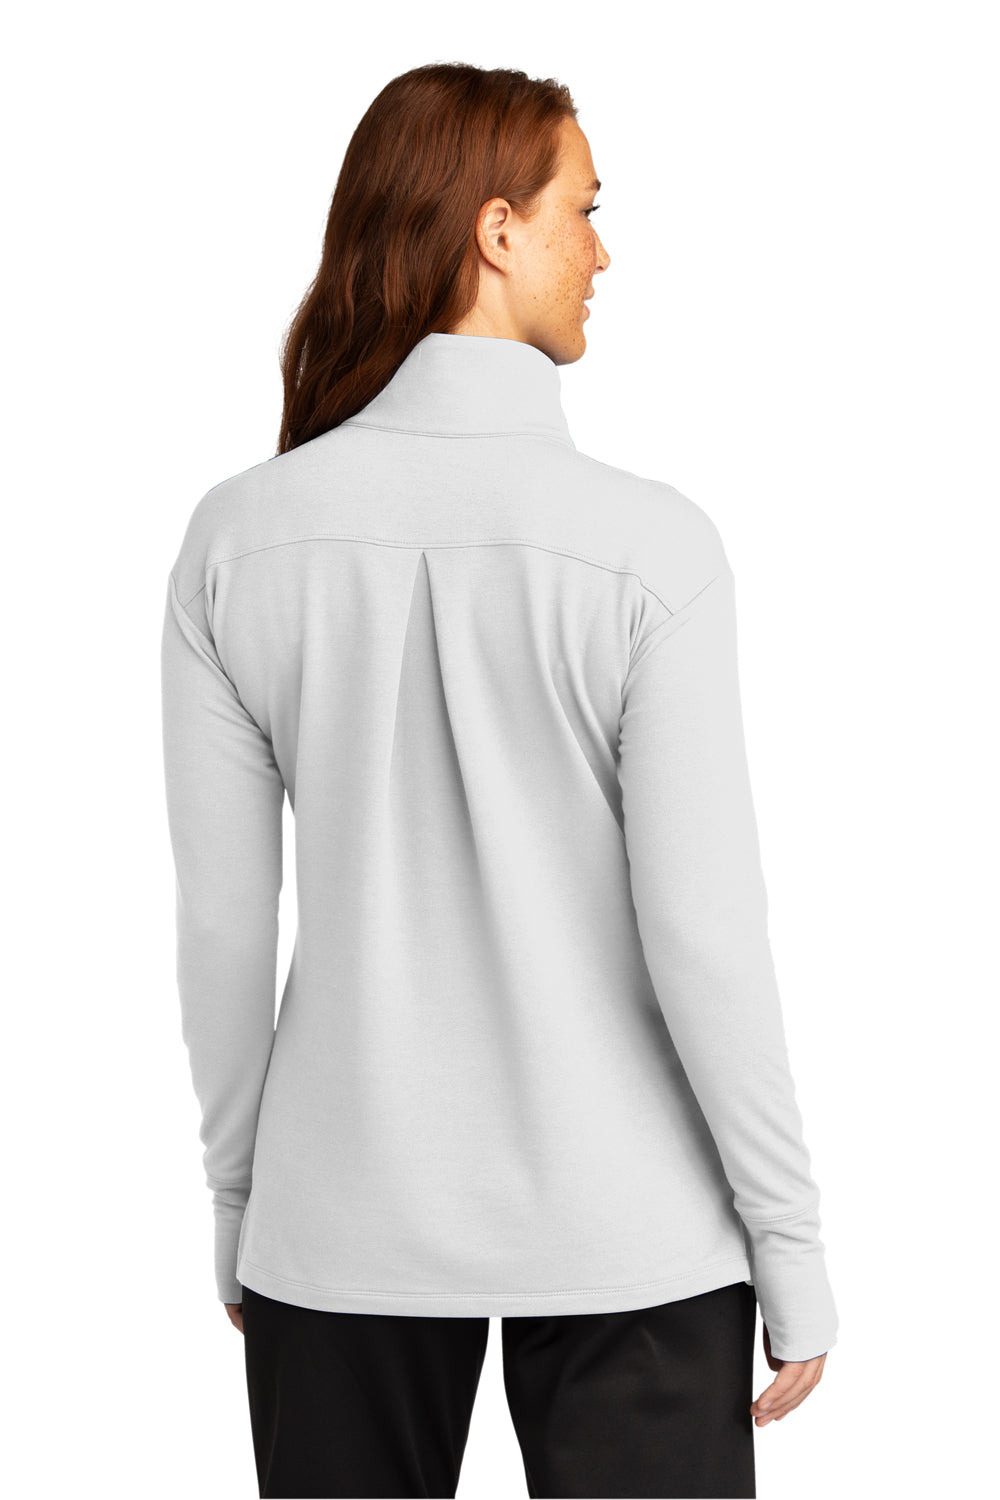 Sport-Tek Womens Flex Fleece 1/4 Zip Sweatshirt White Side